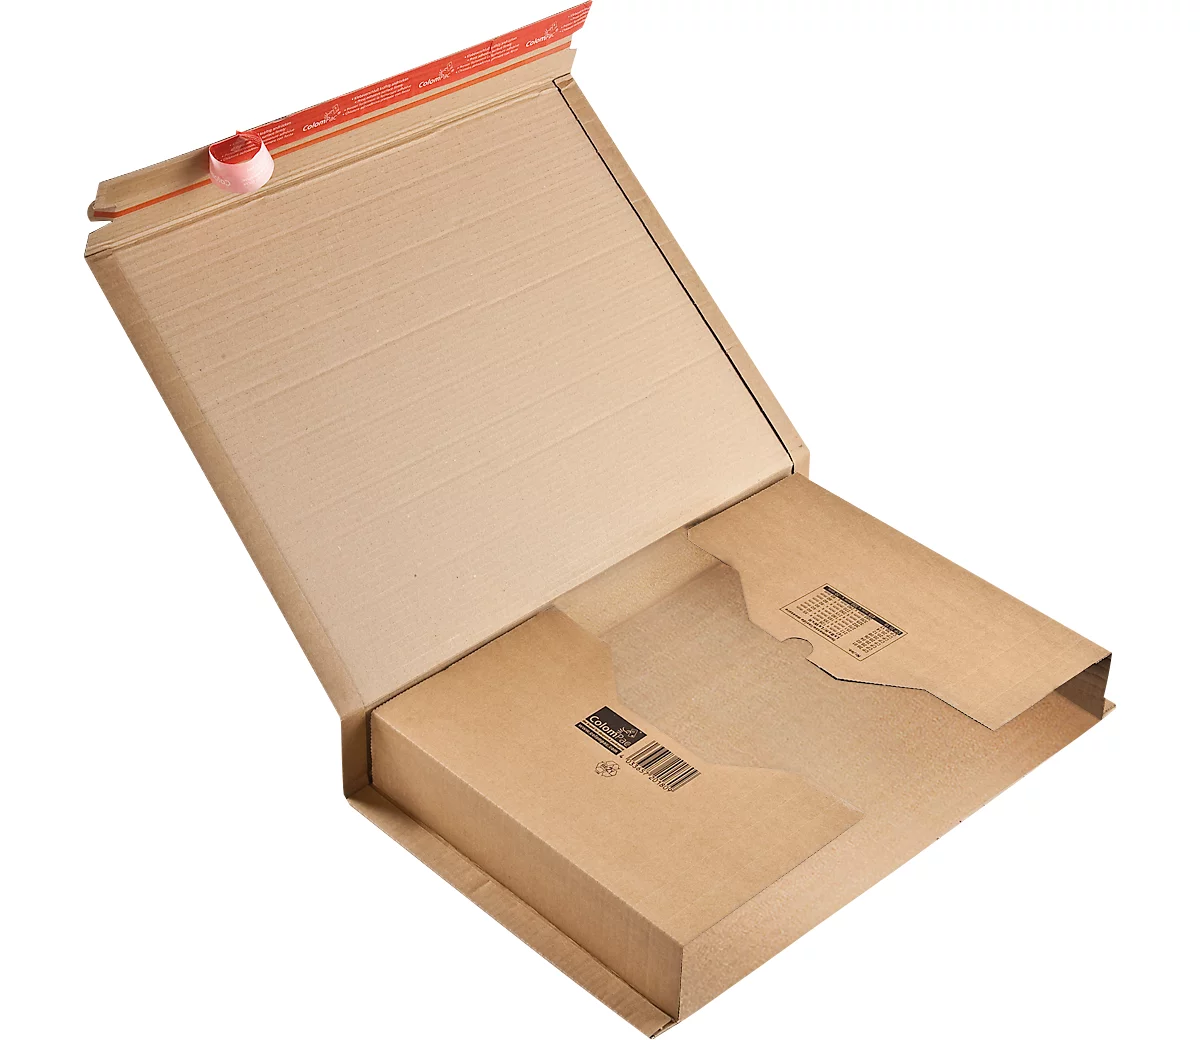 Embalaje envolvente ColomPac CP 020, con precinto autoadhesivo, cartón ondulado, marrón, An 510 x Pr 330 x Al 85 mm (A3), 20 unid.